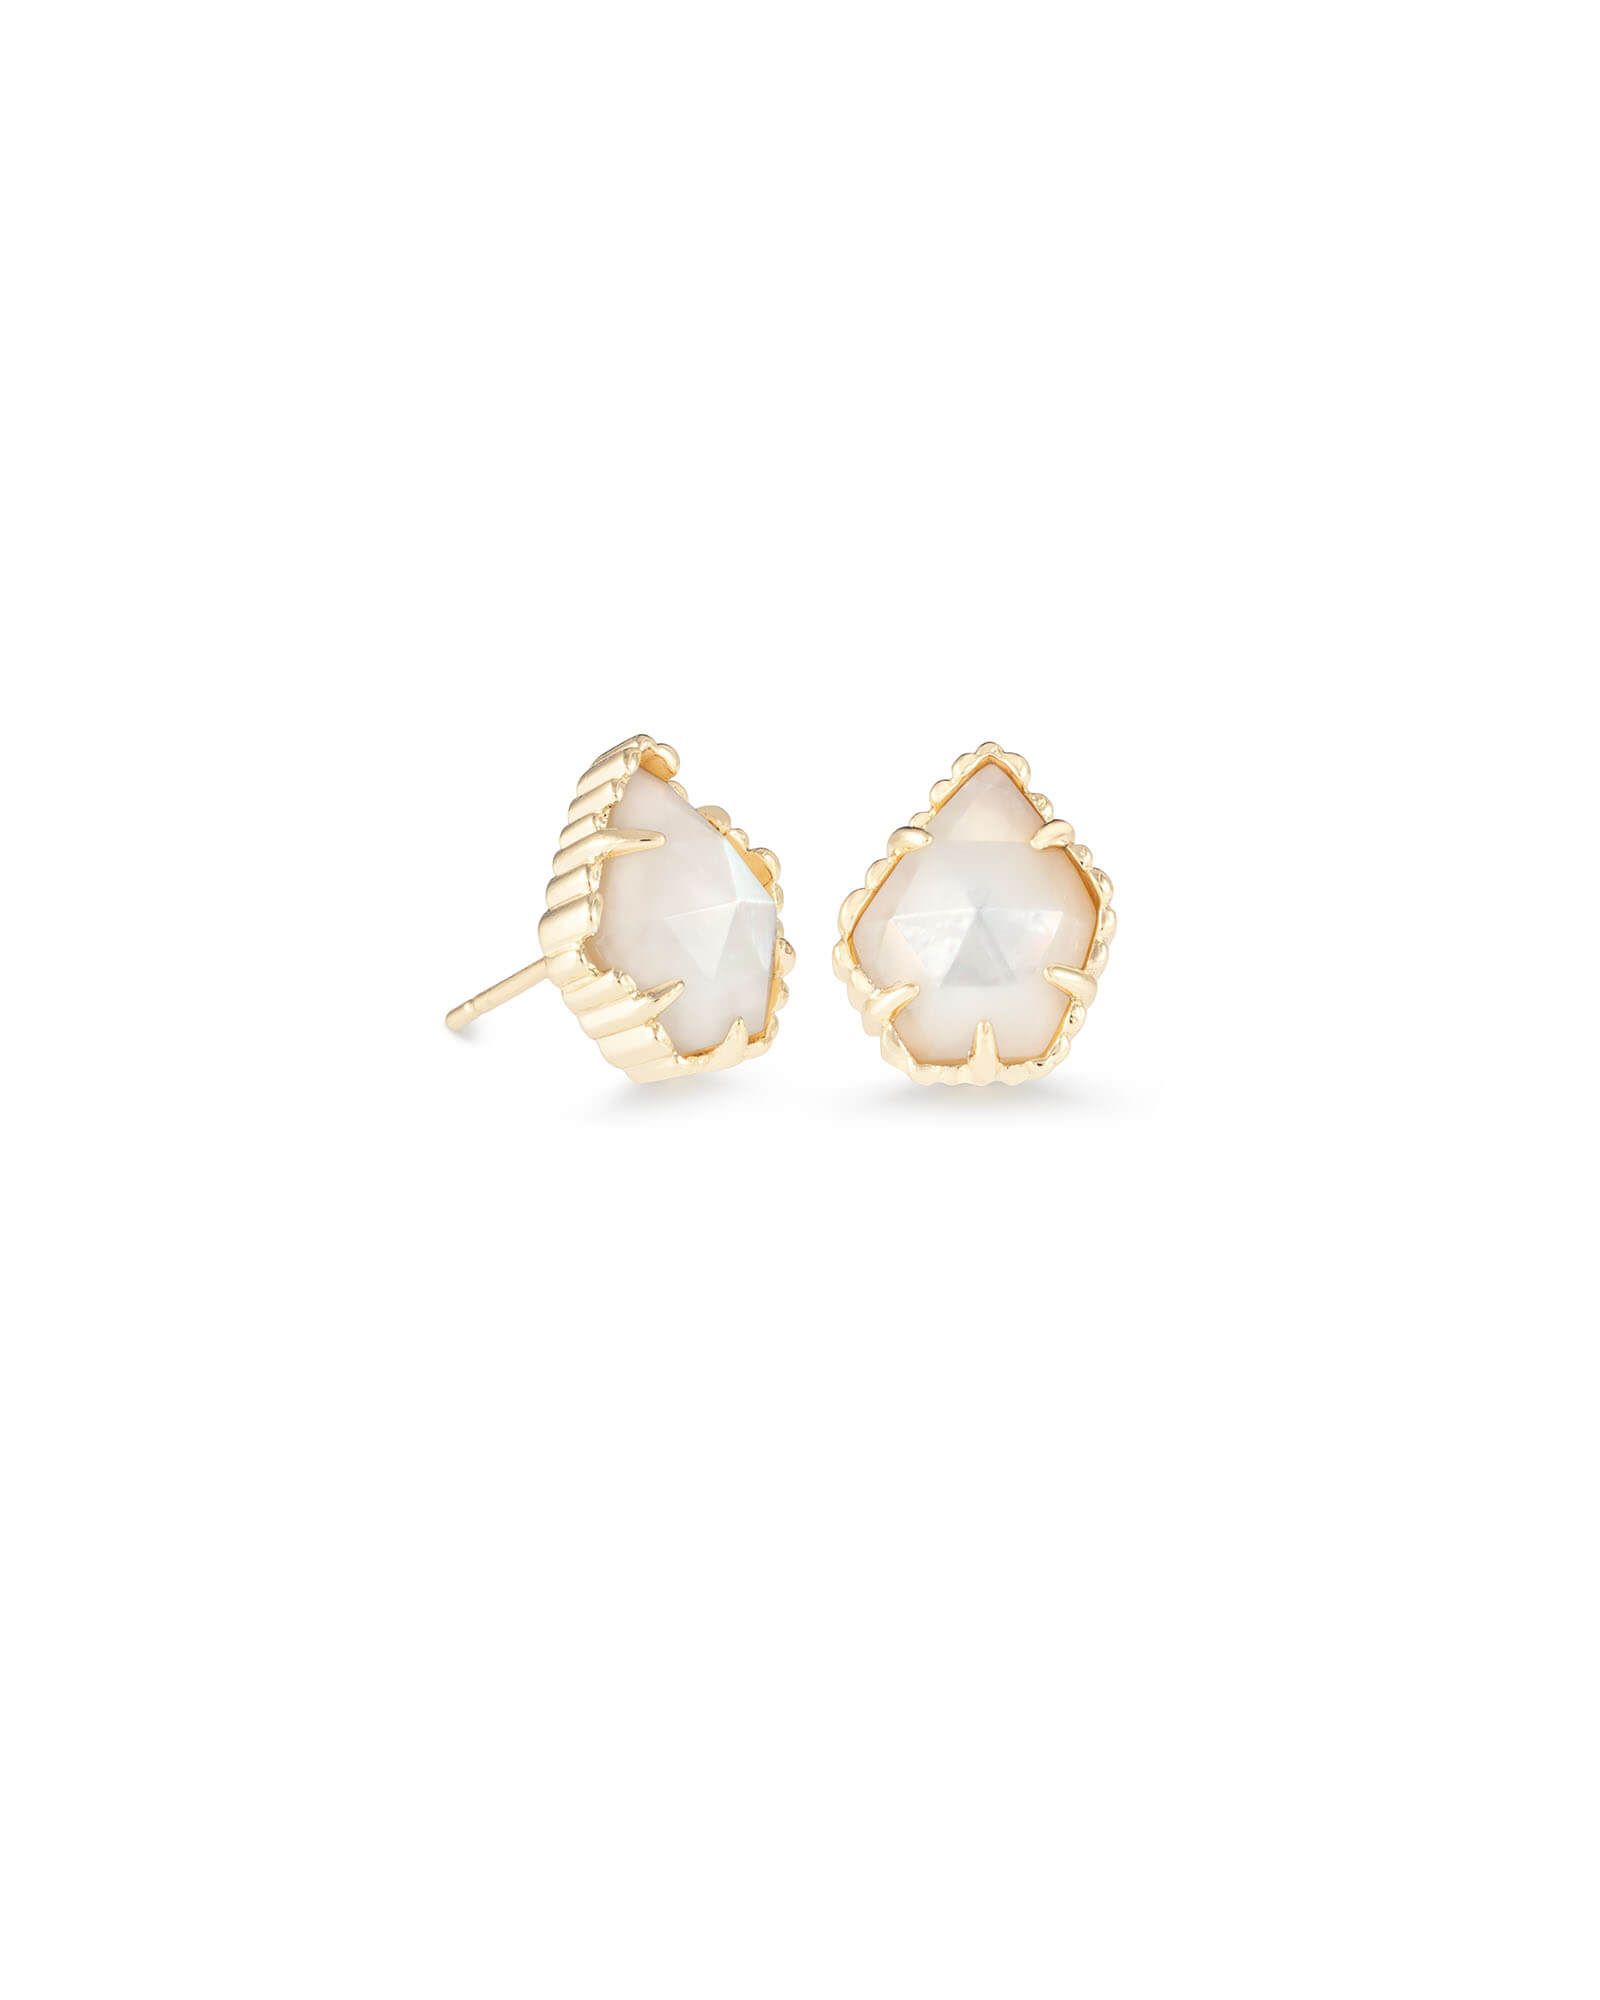 Tessa Gold Stud Earrings in Ivory Pearl | Kendra Scott